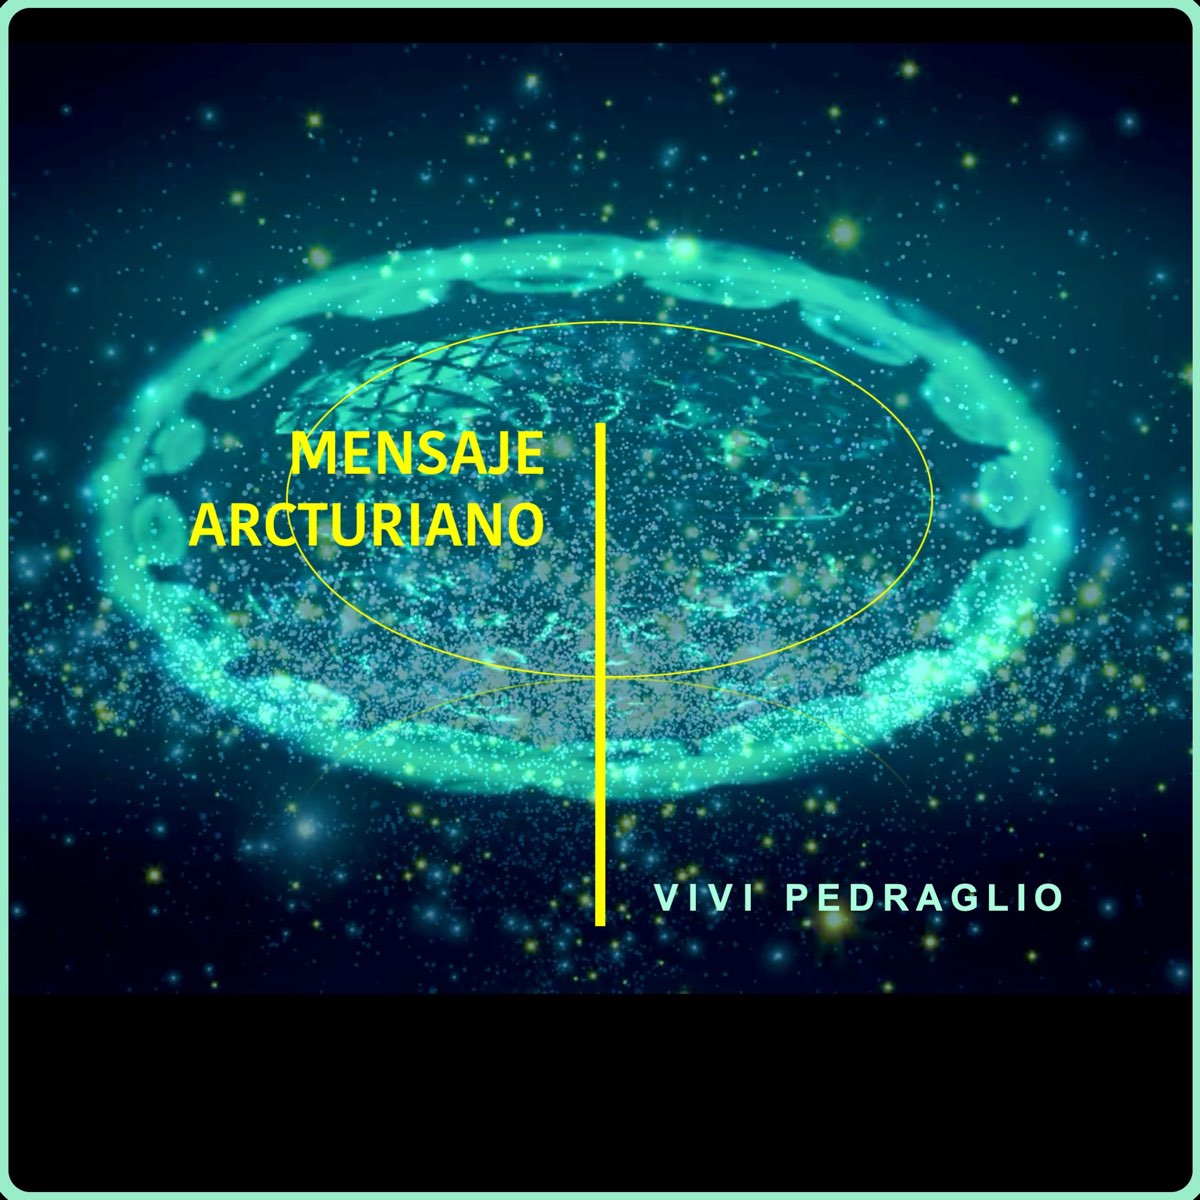 Mensaje Arcturiano - EP by Vivi Pedraglio on Apple Music